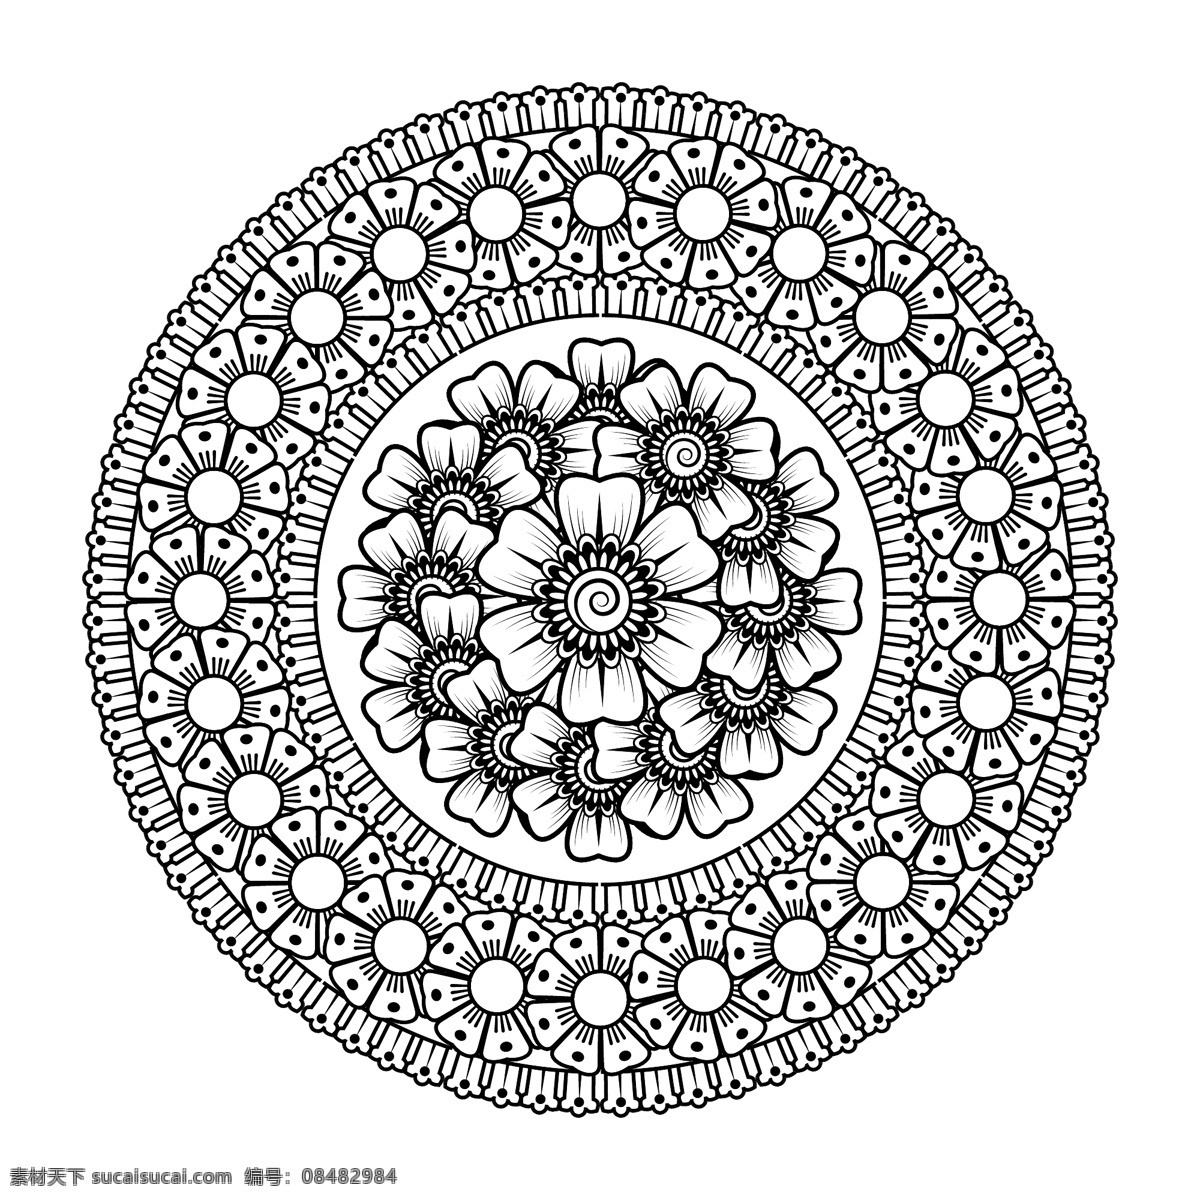 黑白 花朵 图案 边框 圆形 圆环 方形 环形 矢量 高清图片